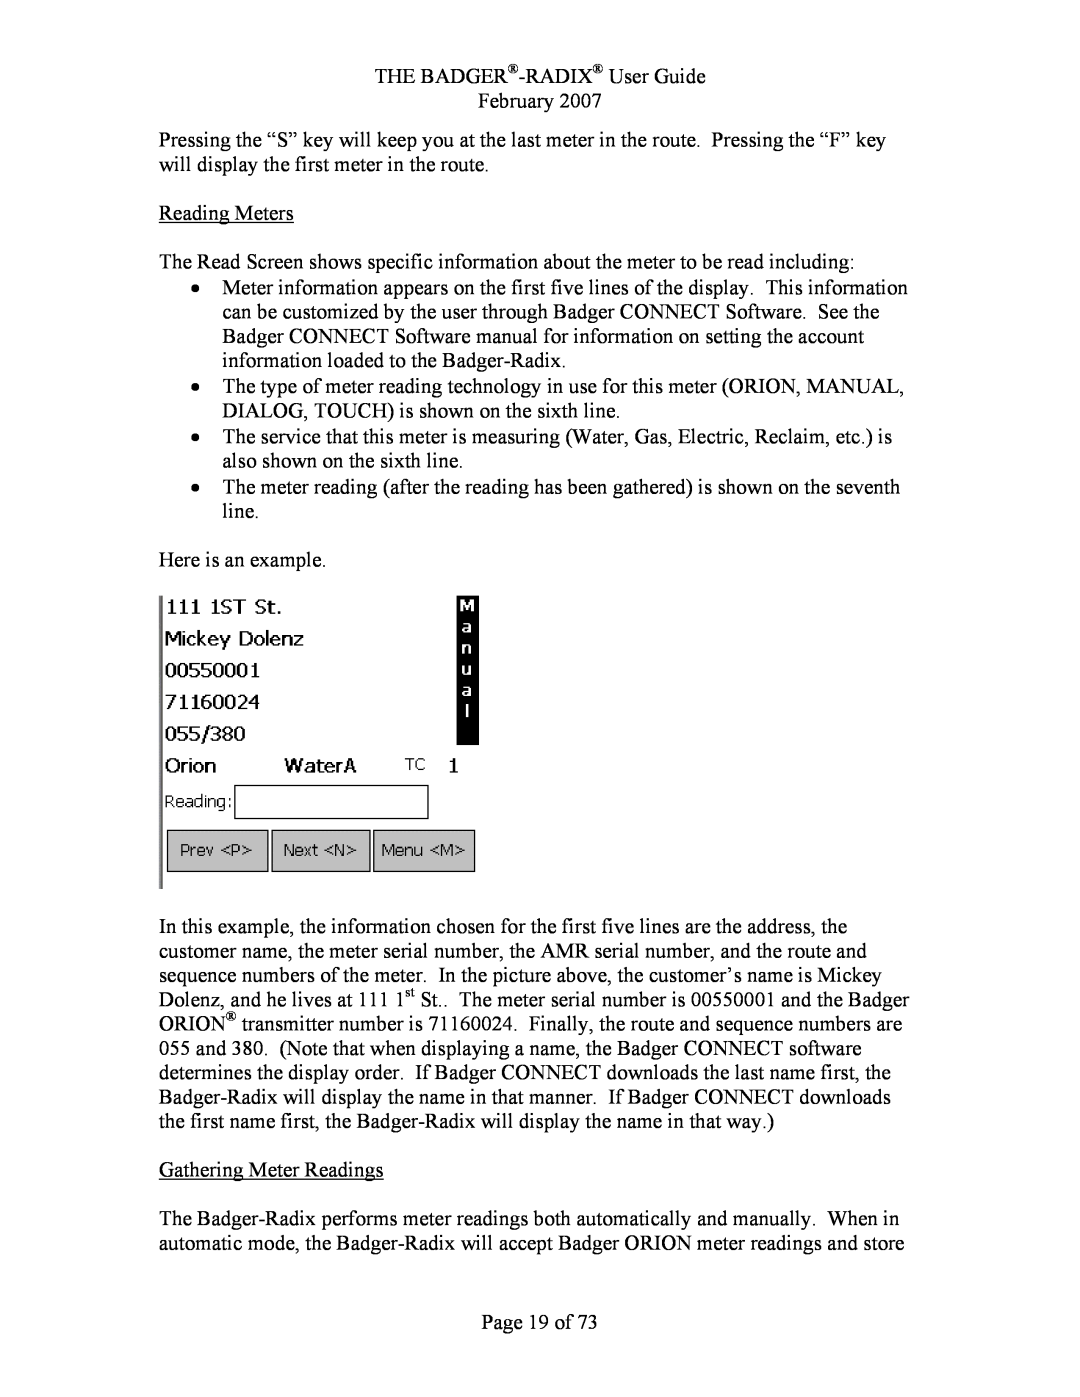 Badger Basket N64944-001, RAD-IOM-01 Reading Meters, Here is an example, Gathering Meter Readings, Page 19 of 